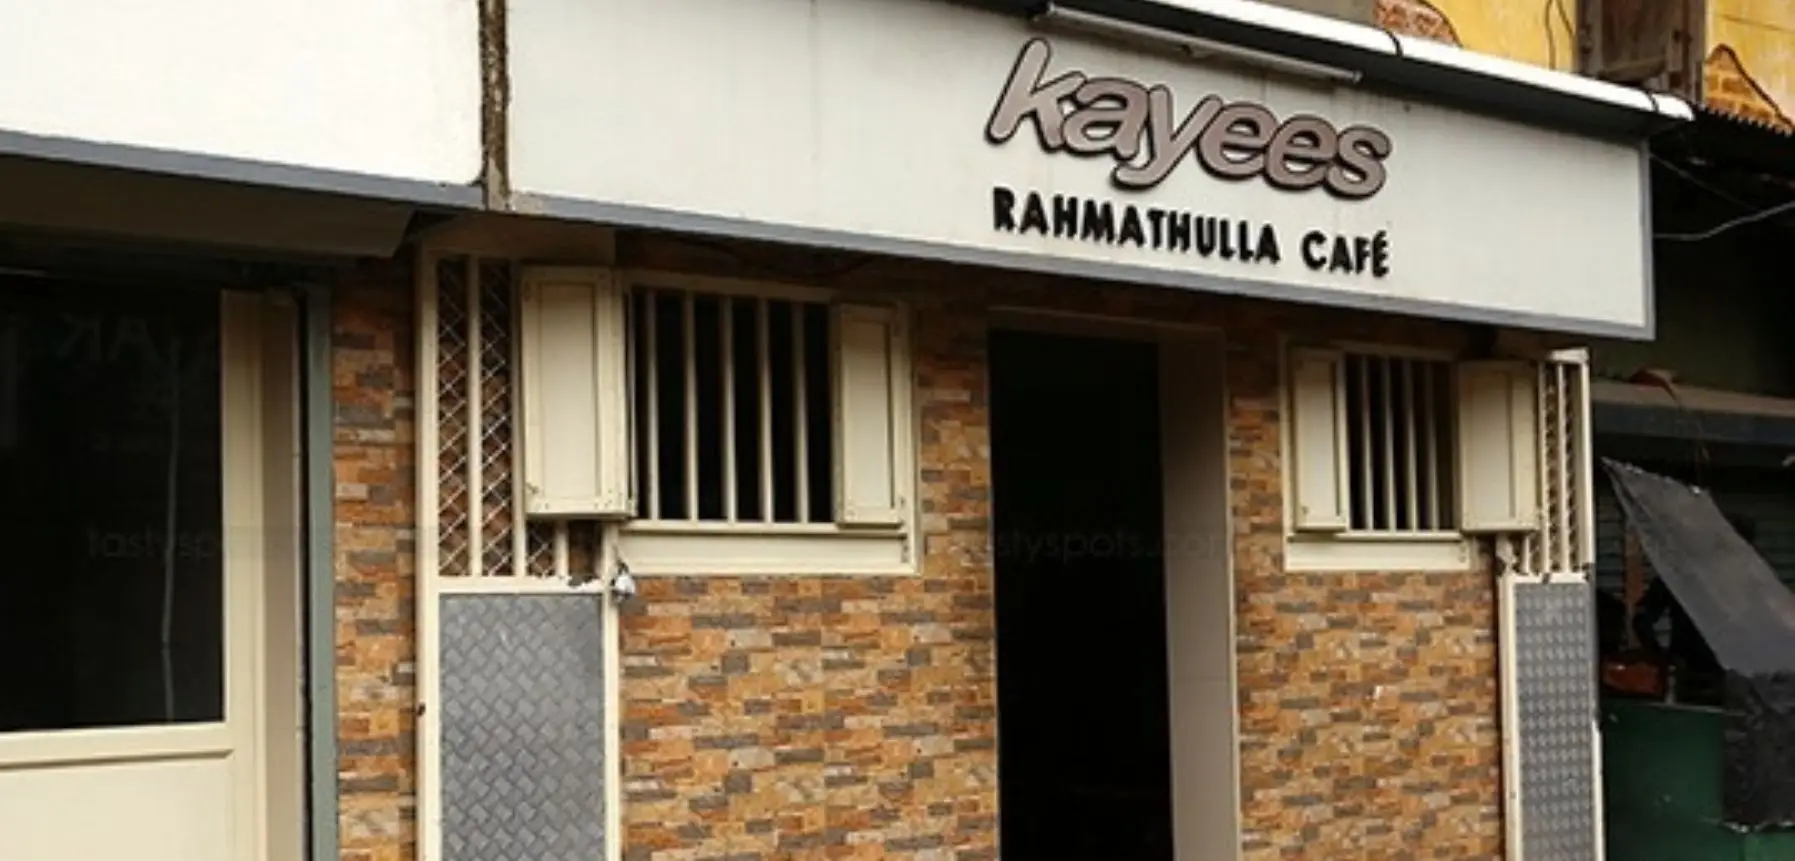 Rahmathullah Hotel Kerala